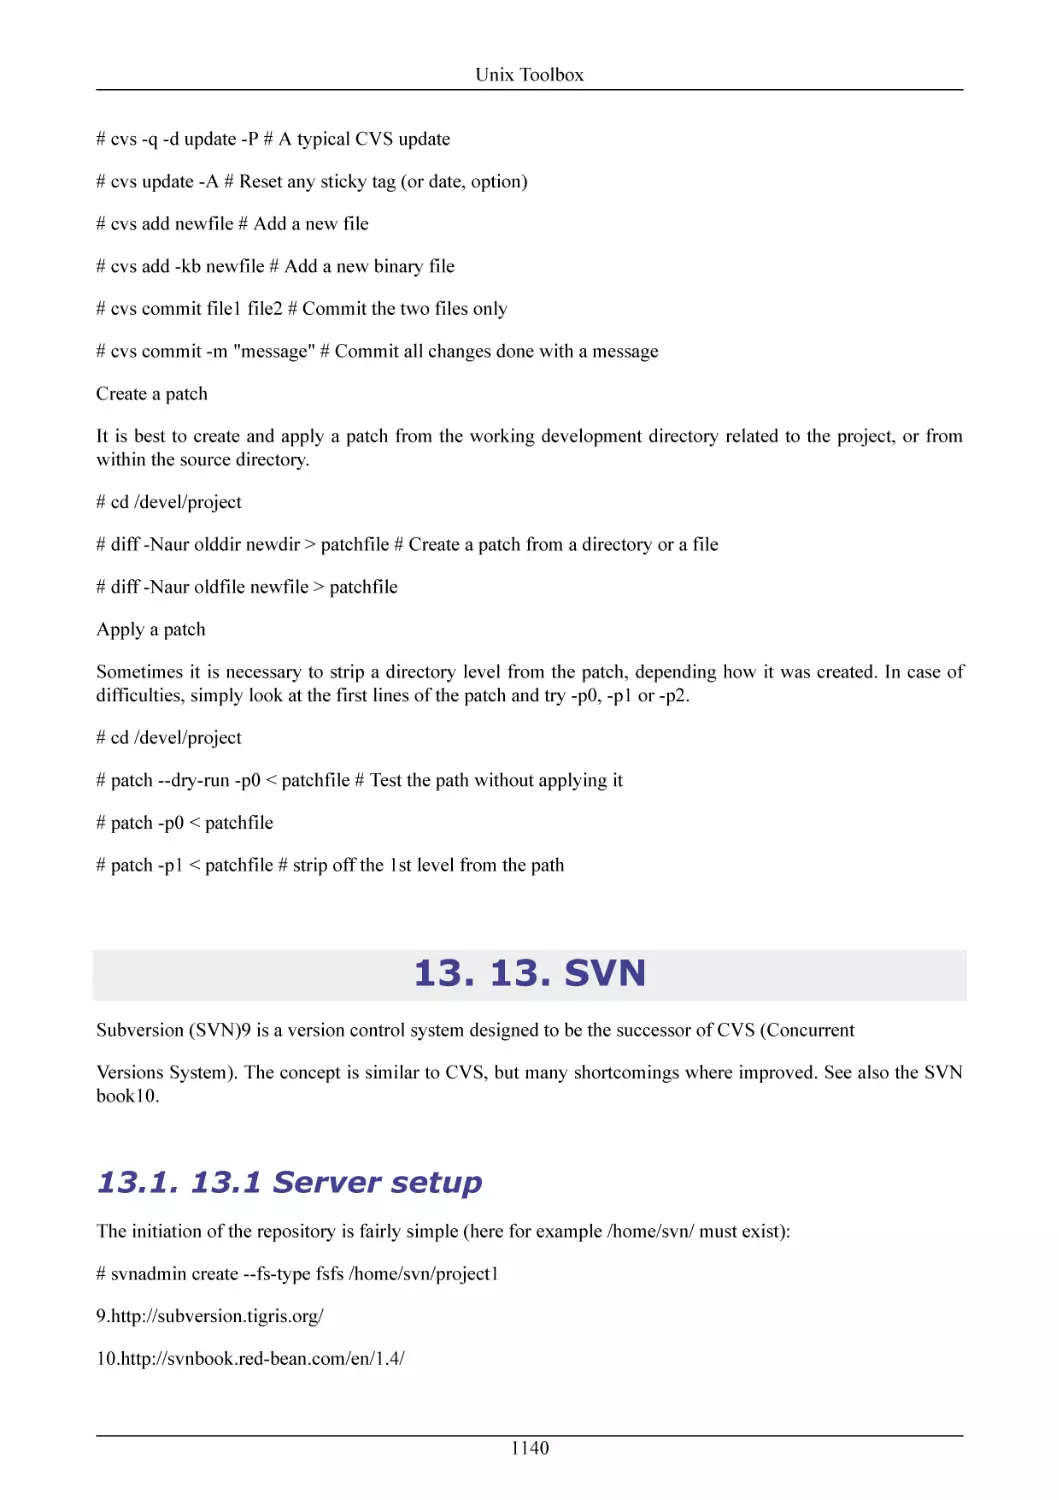 13. SVN
13.1 Server setup